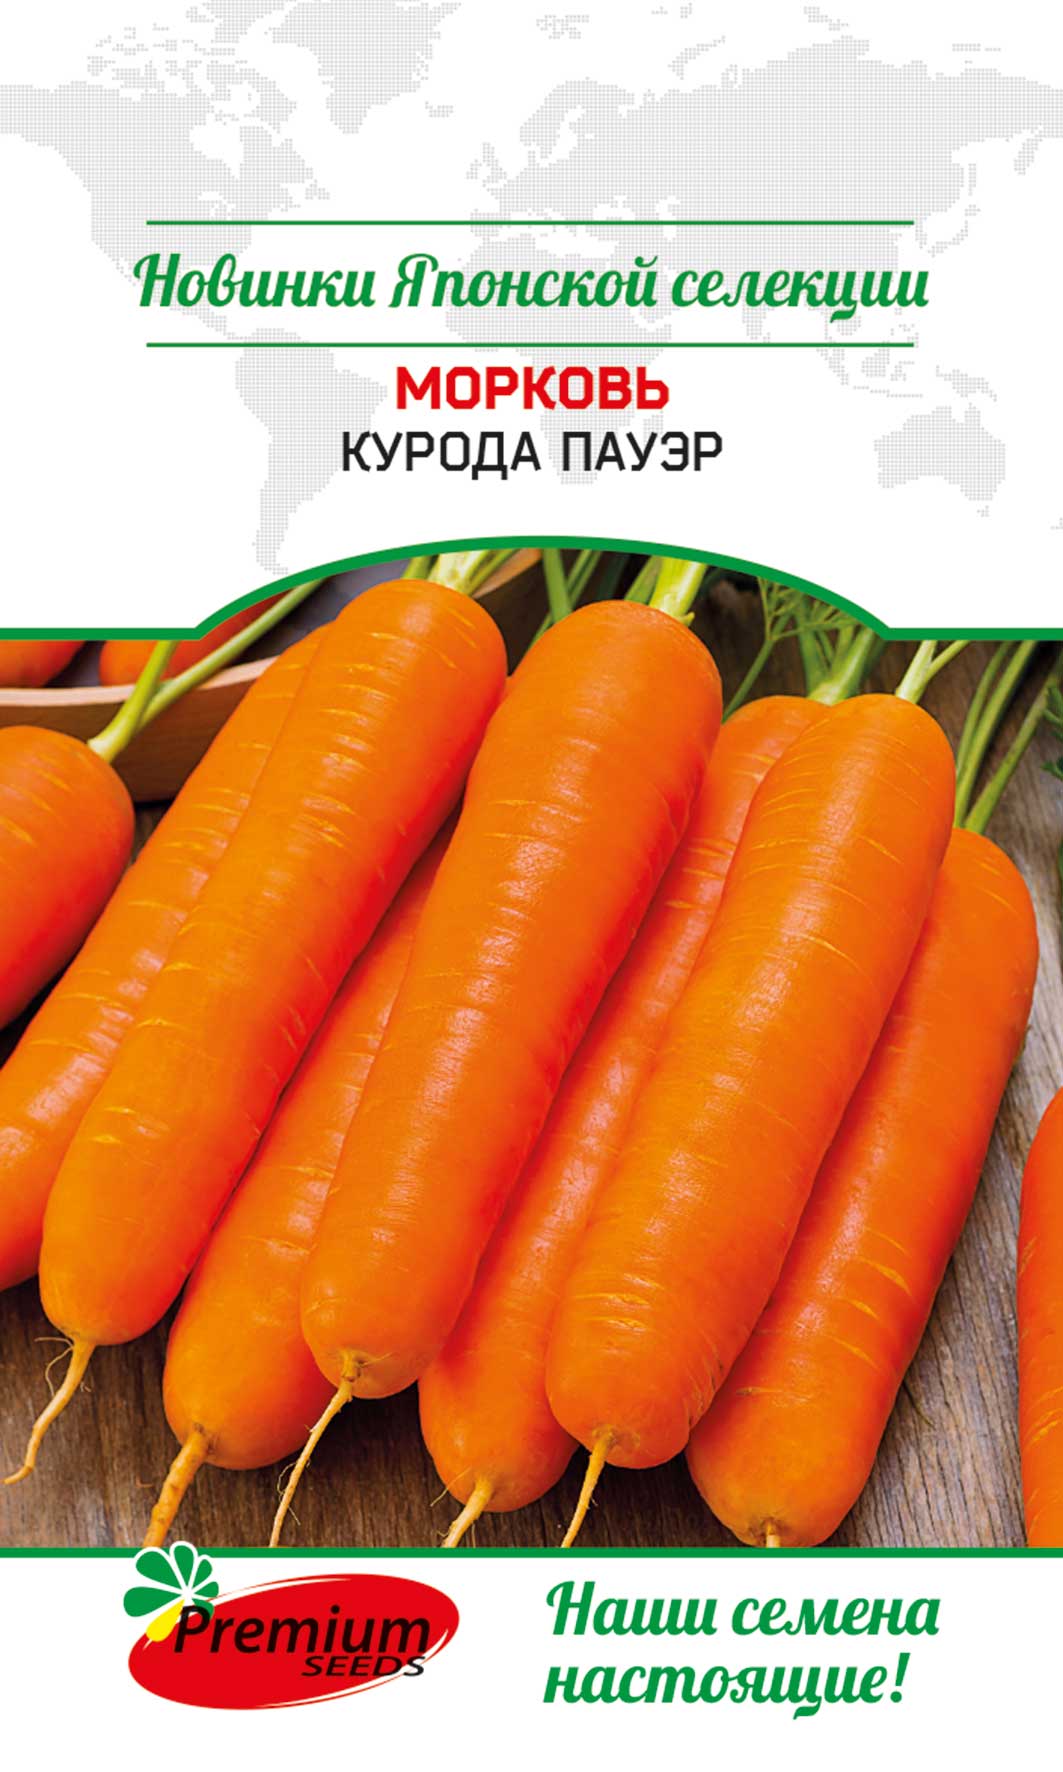 Семена морковь Premium seeds Курода Пауэр 1 уп.